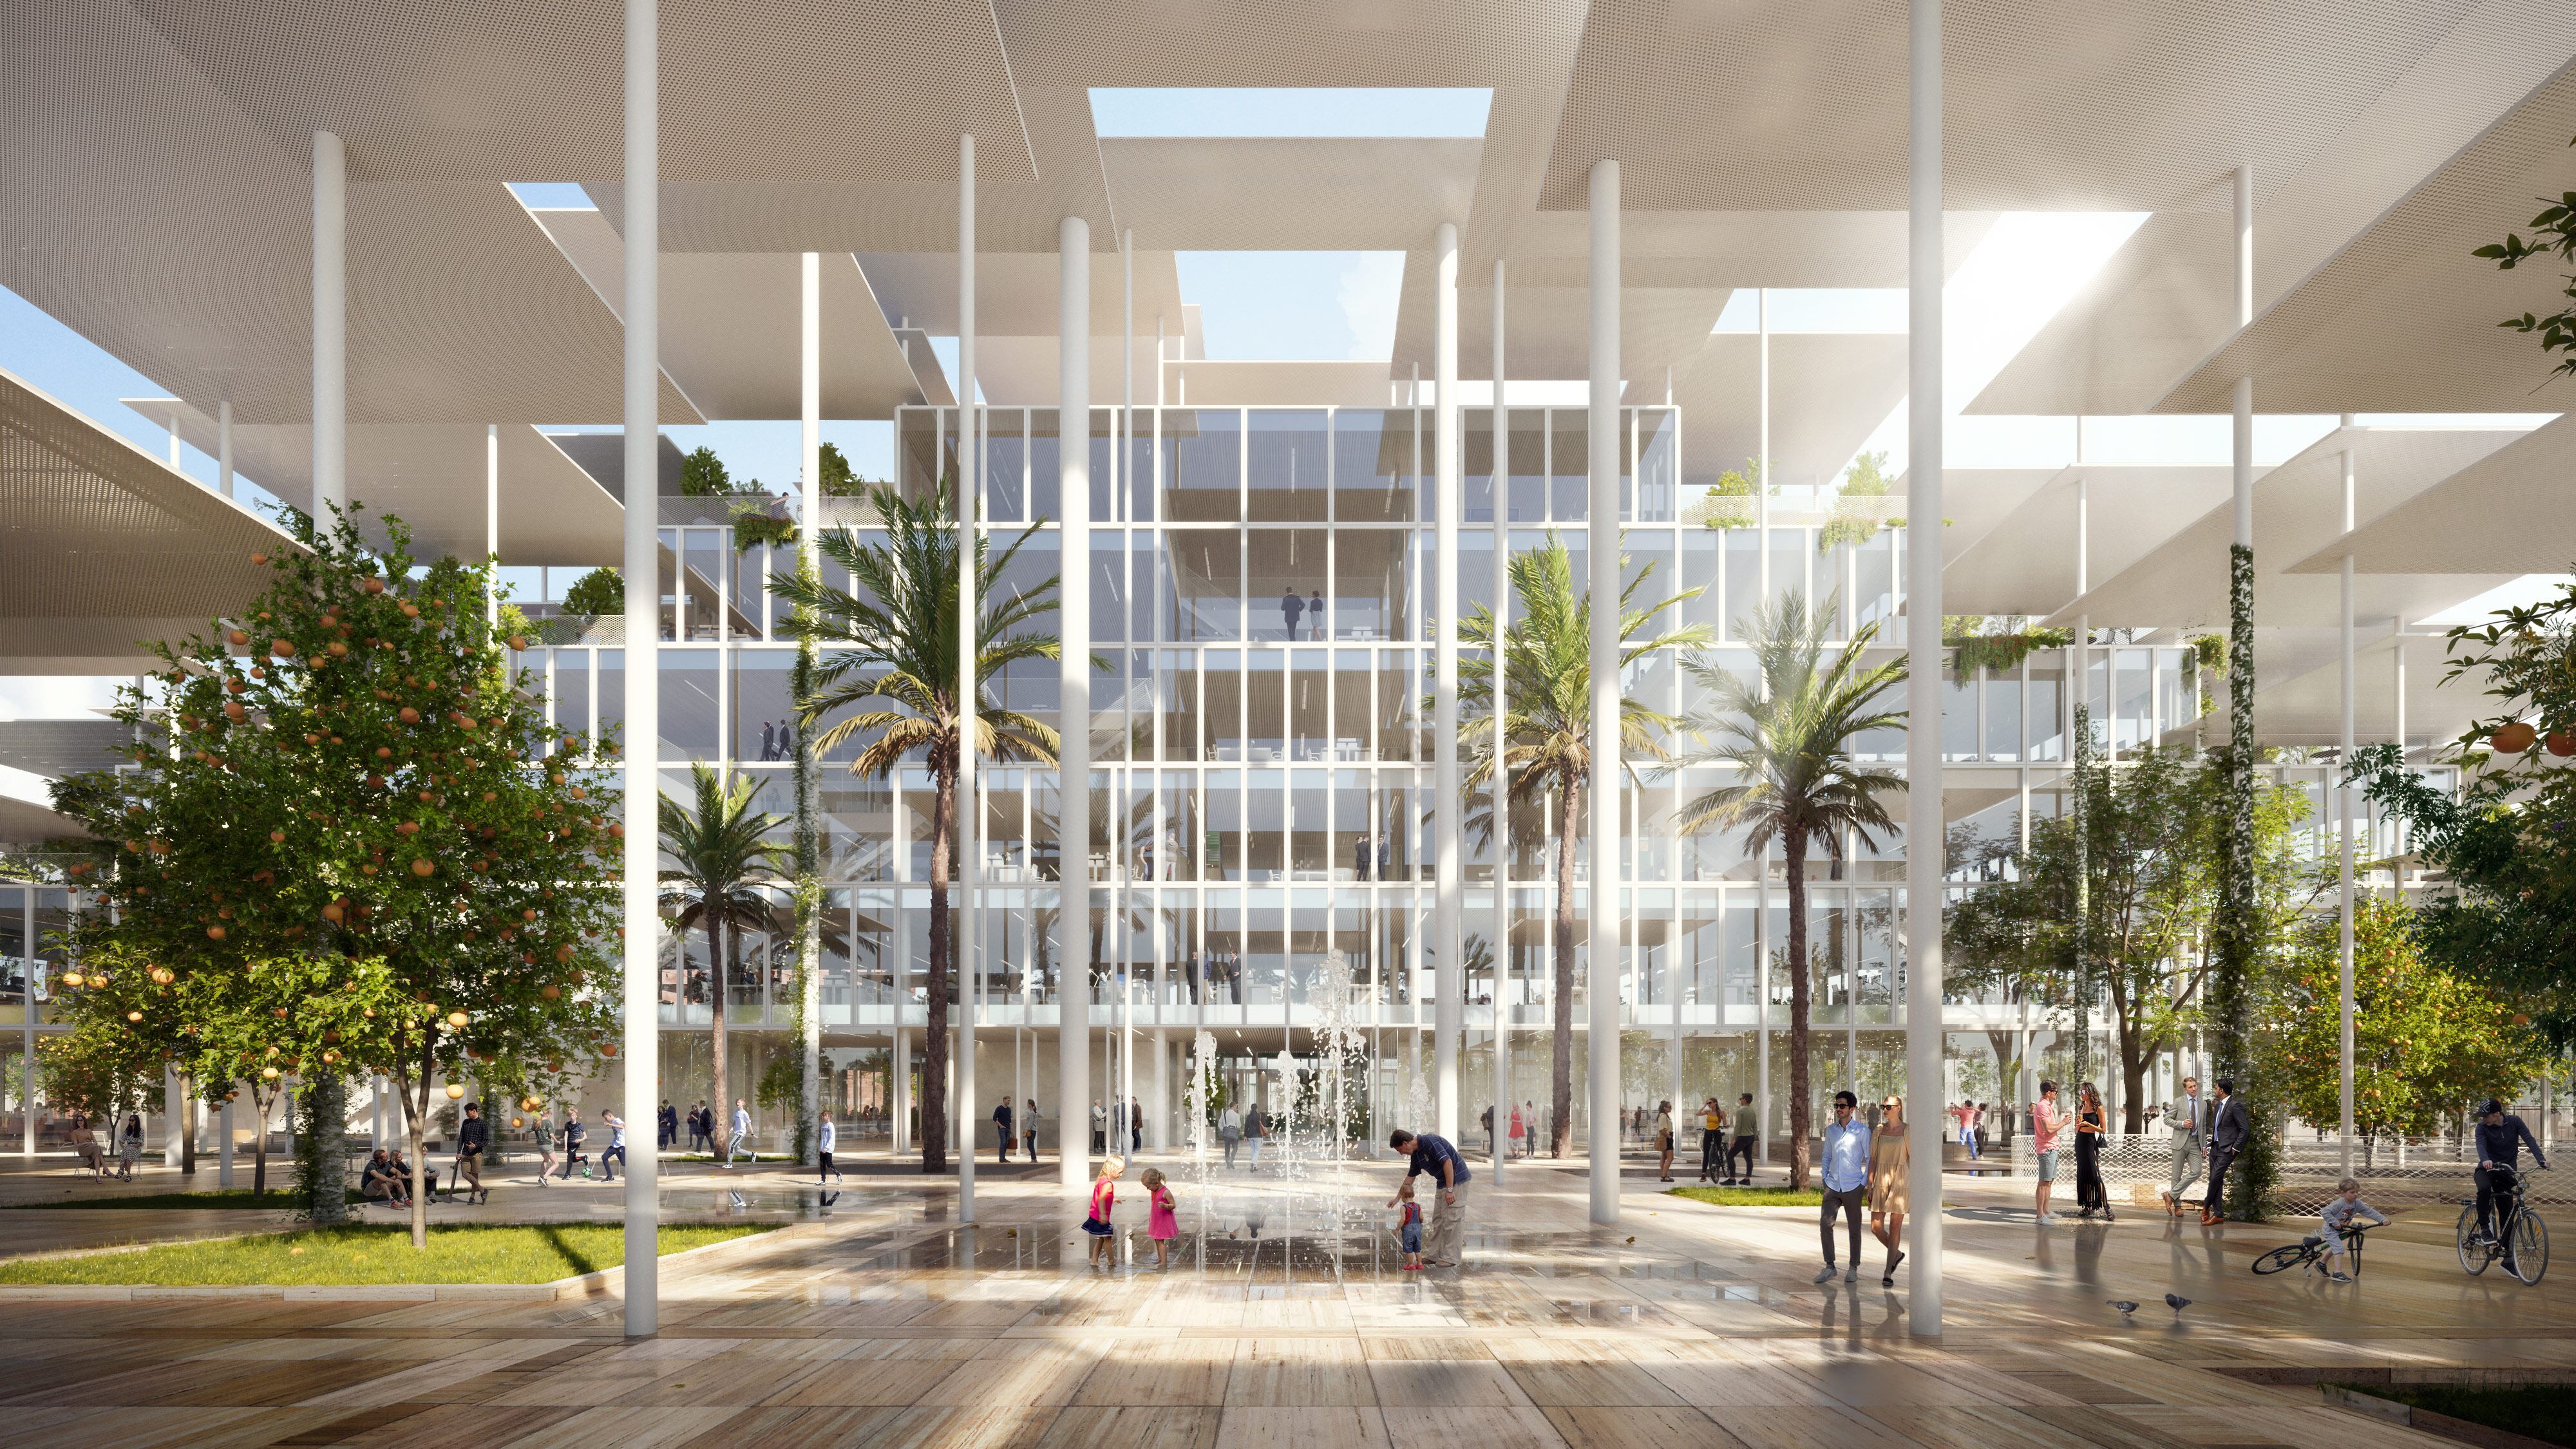 Recreación de la futura sede del JRC según el proyecto de Bjarke Ingels Group para Sevilla. / JRC